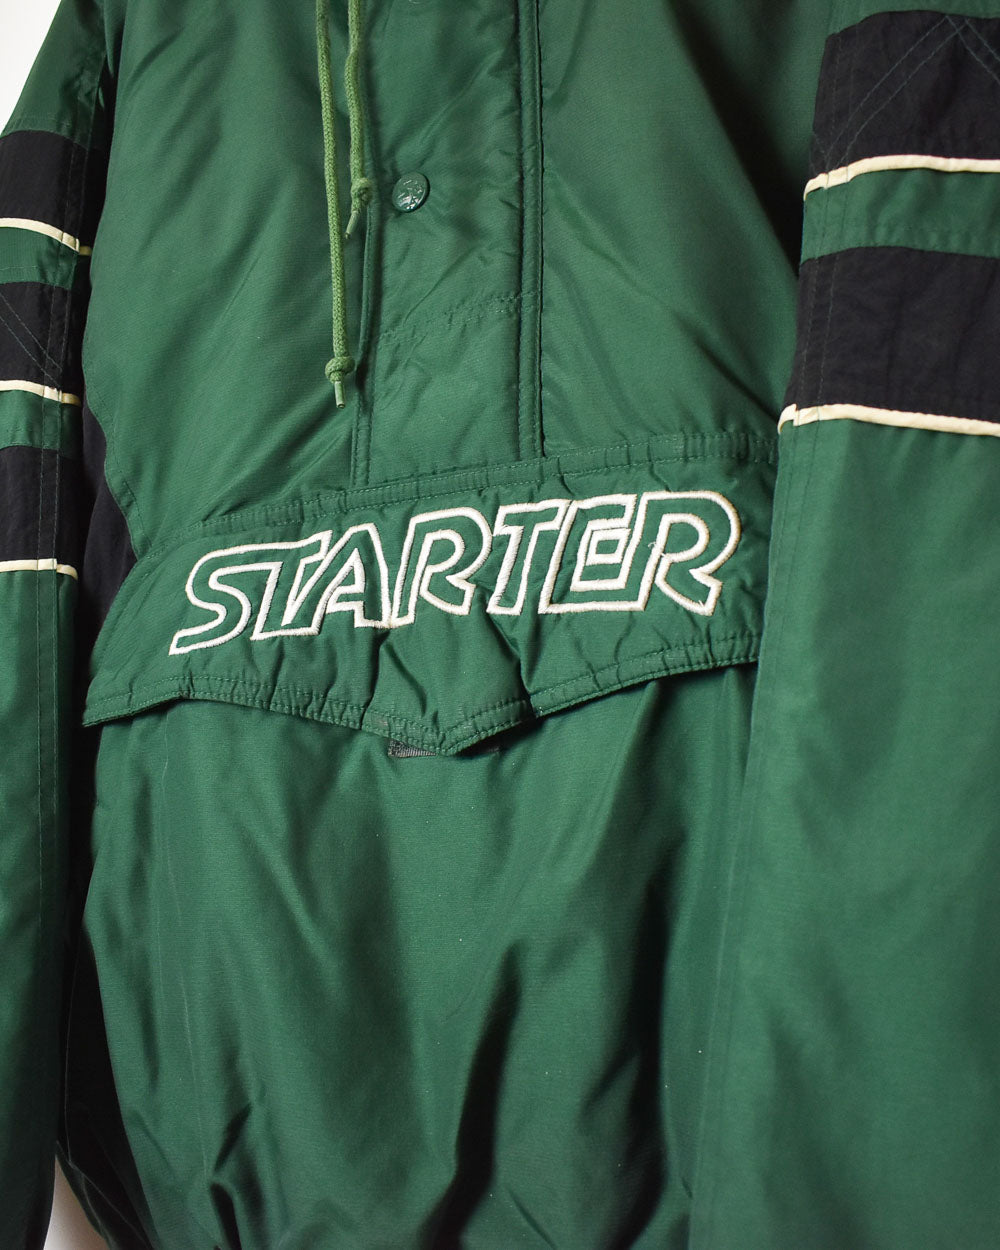 Green Starter 1/4 Zip Jacket - Large